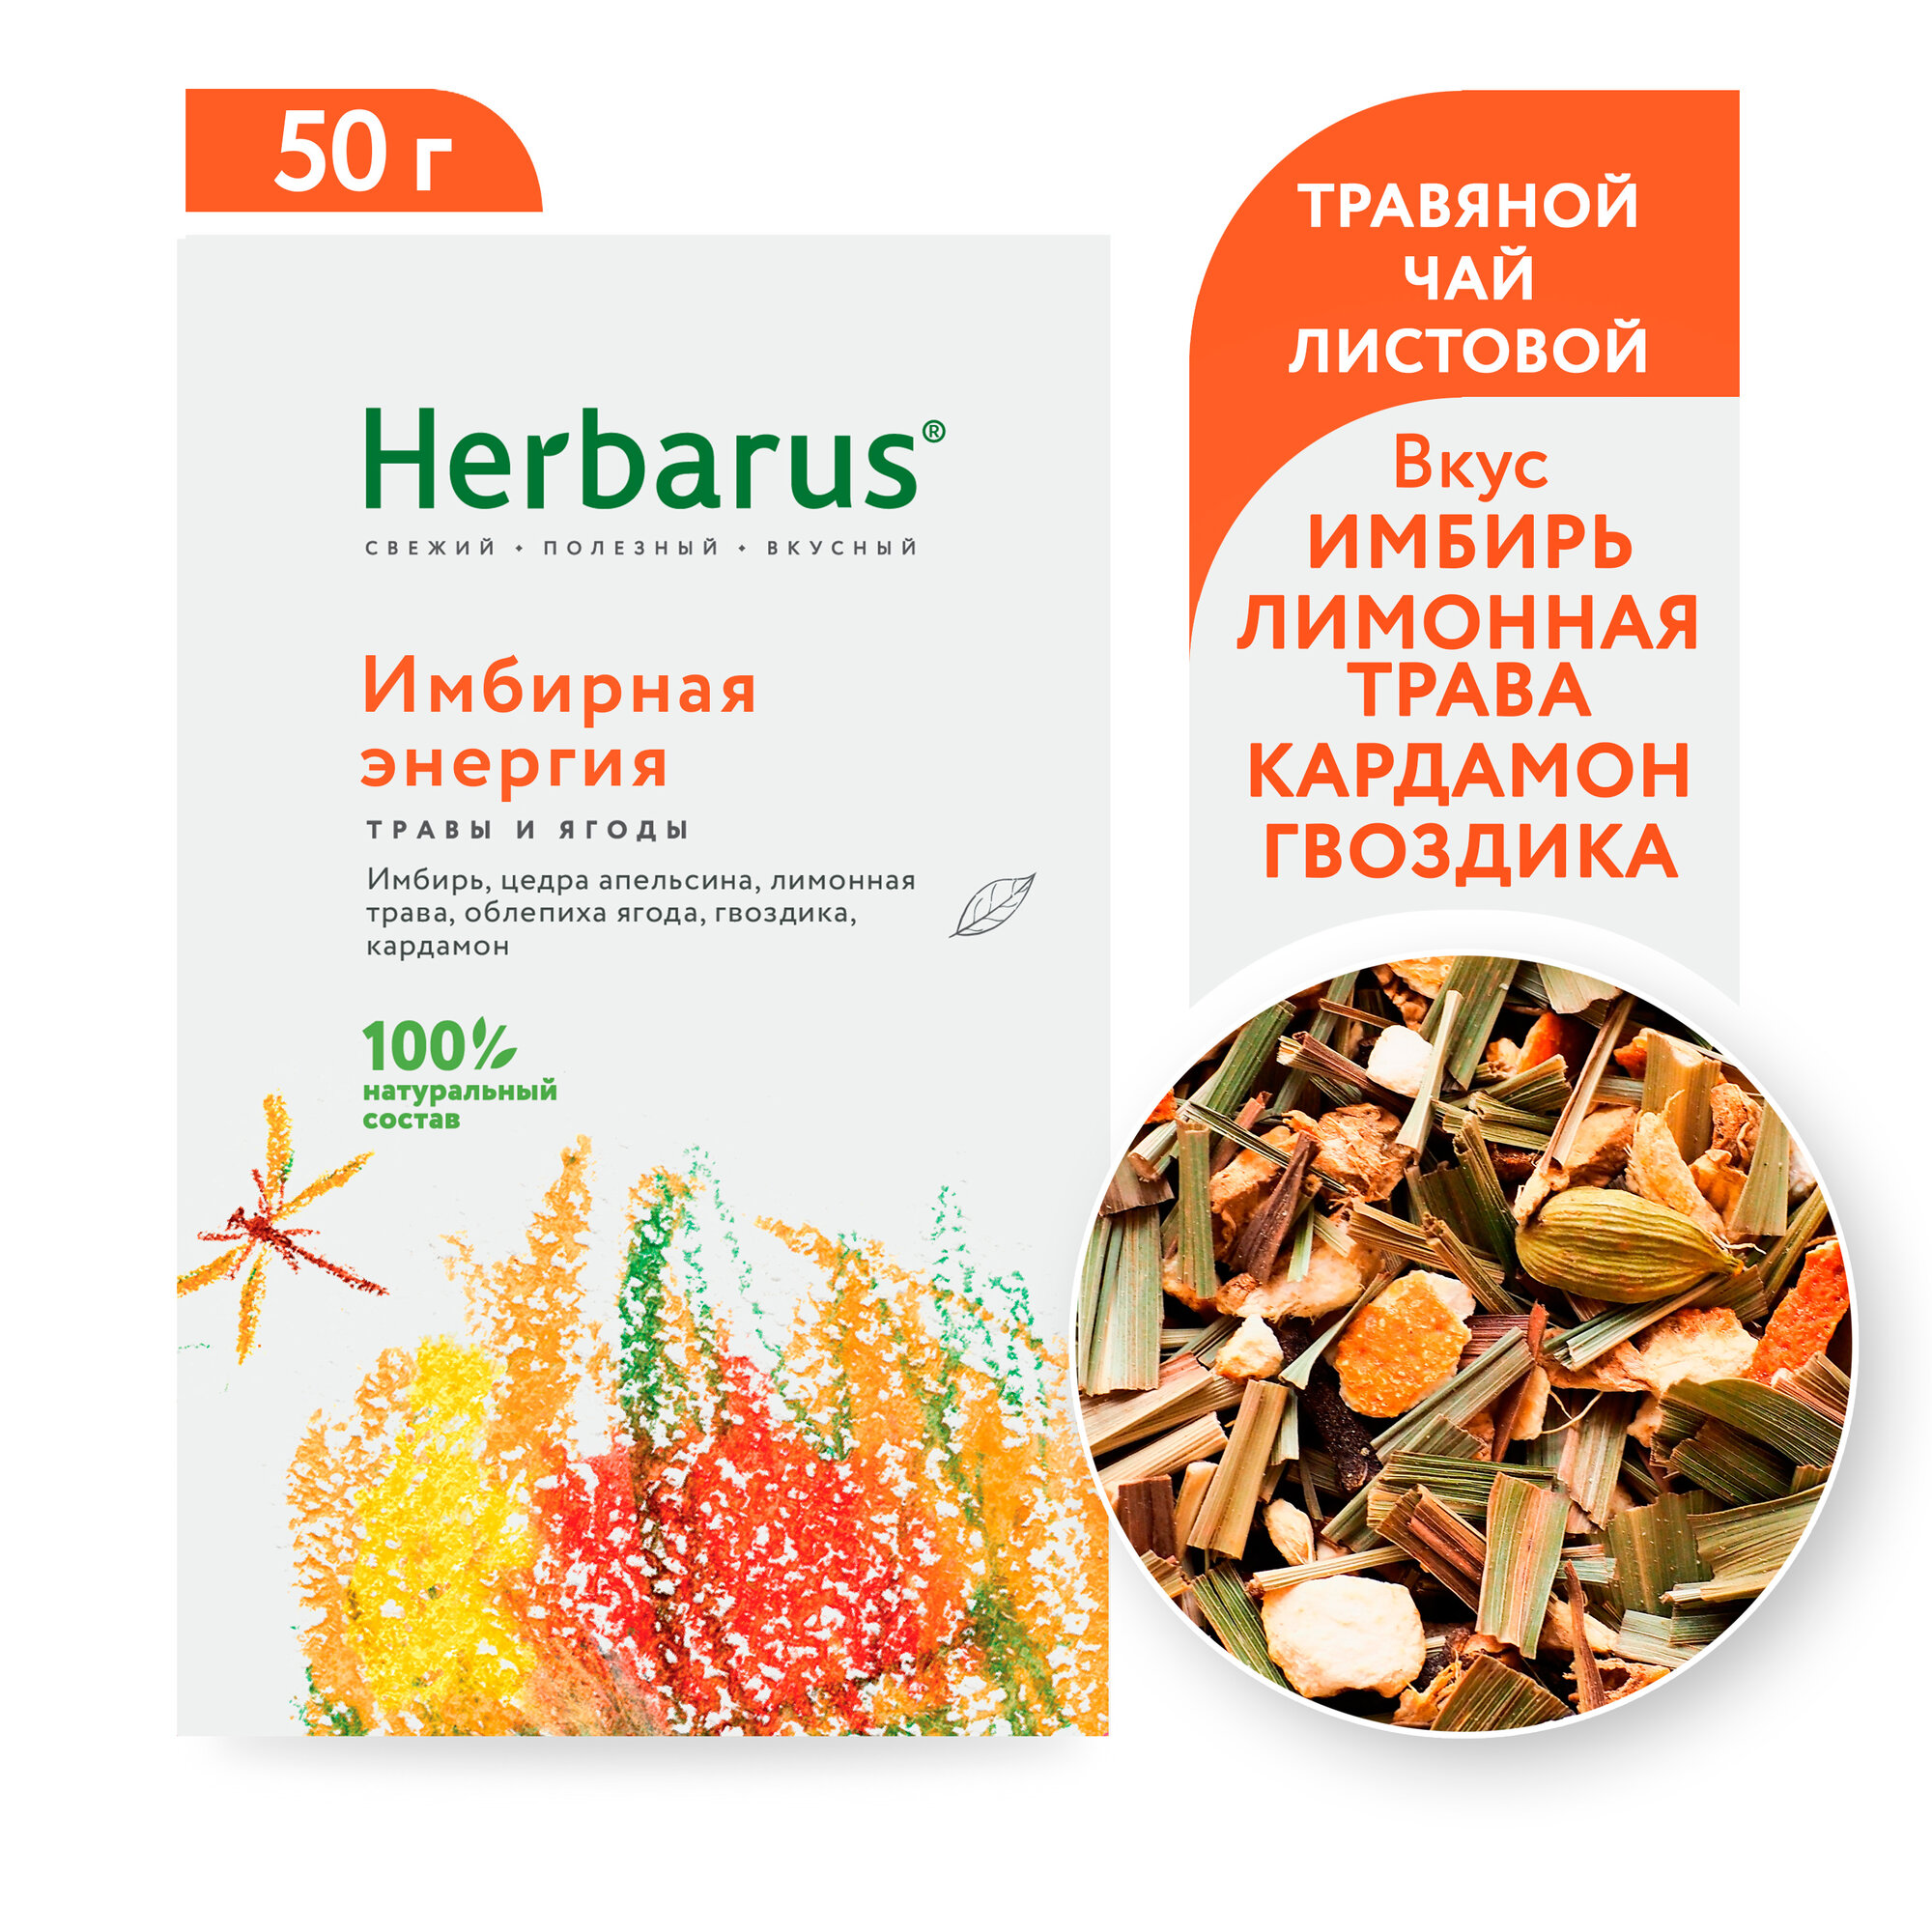 Чайный напиток Herbarus "Имбирная Энергия", листовой, 50г.